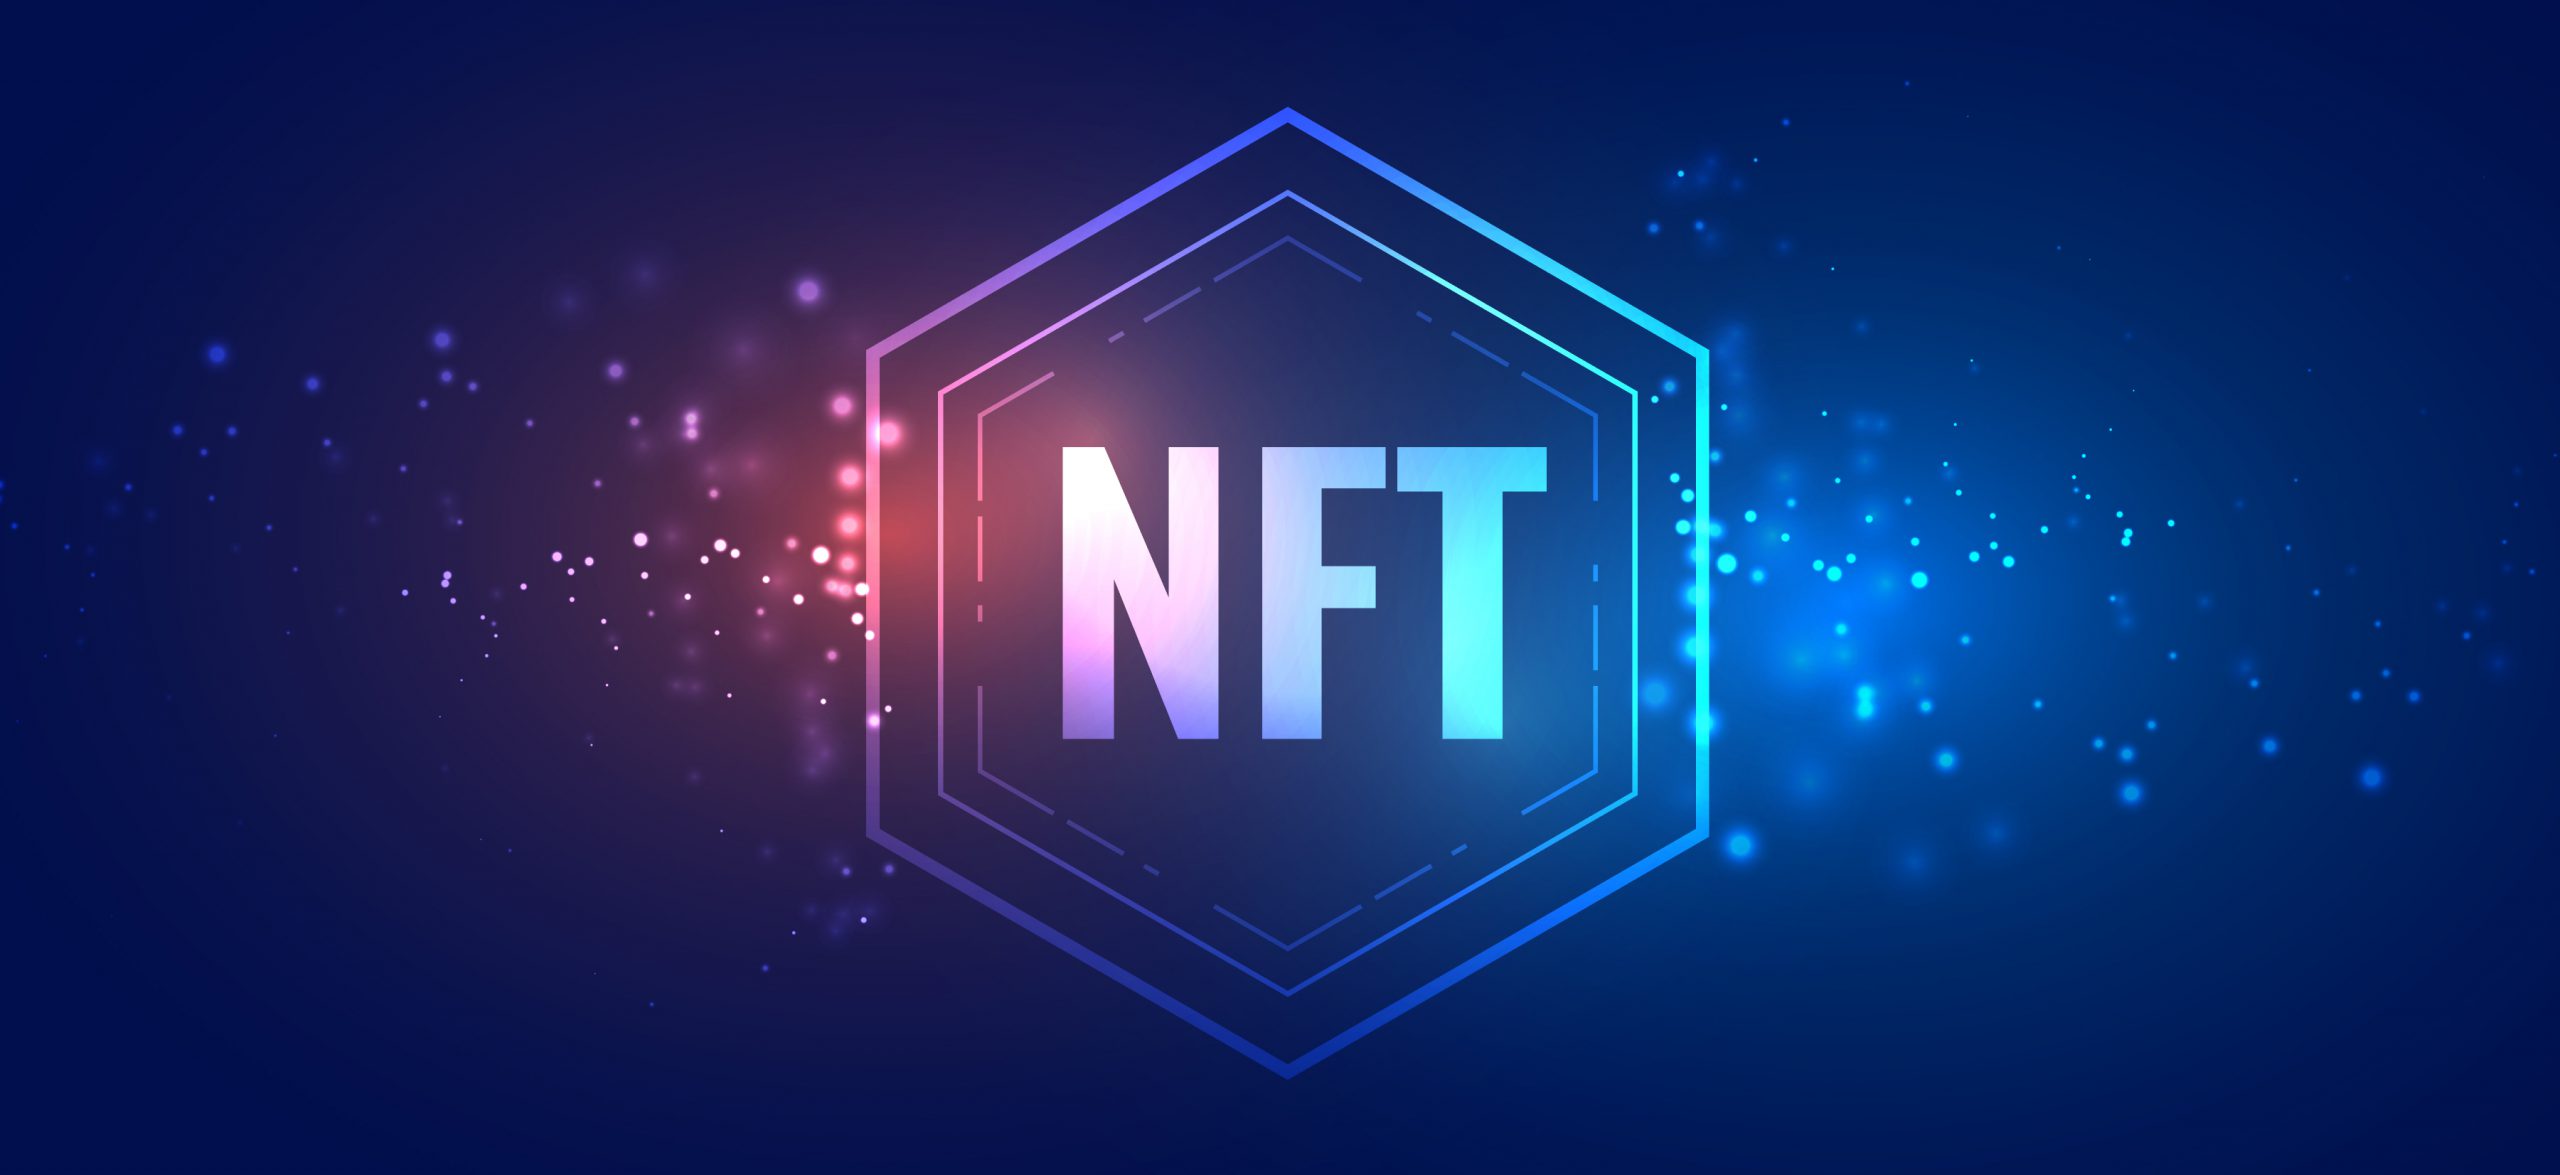 ¿Sabes qué son los NFT?